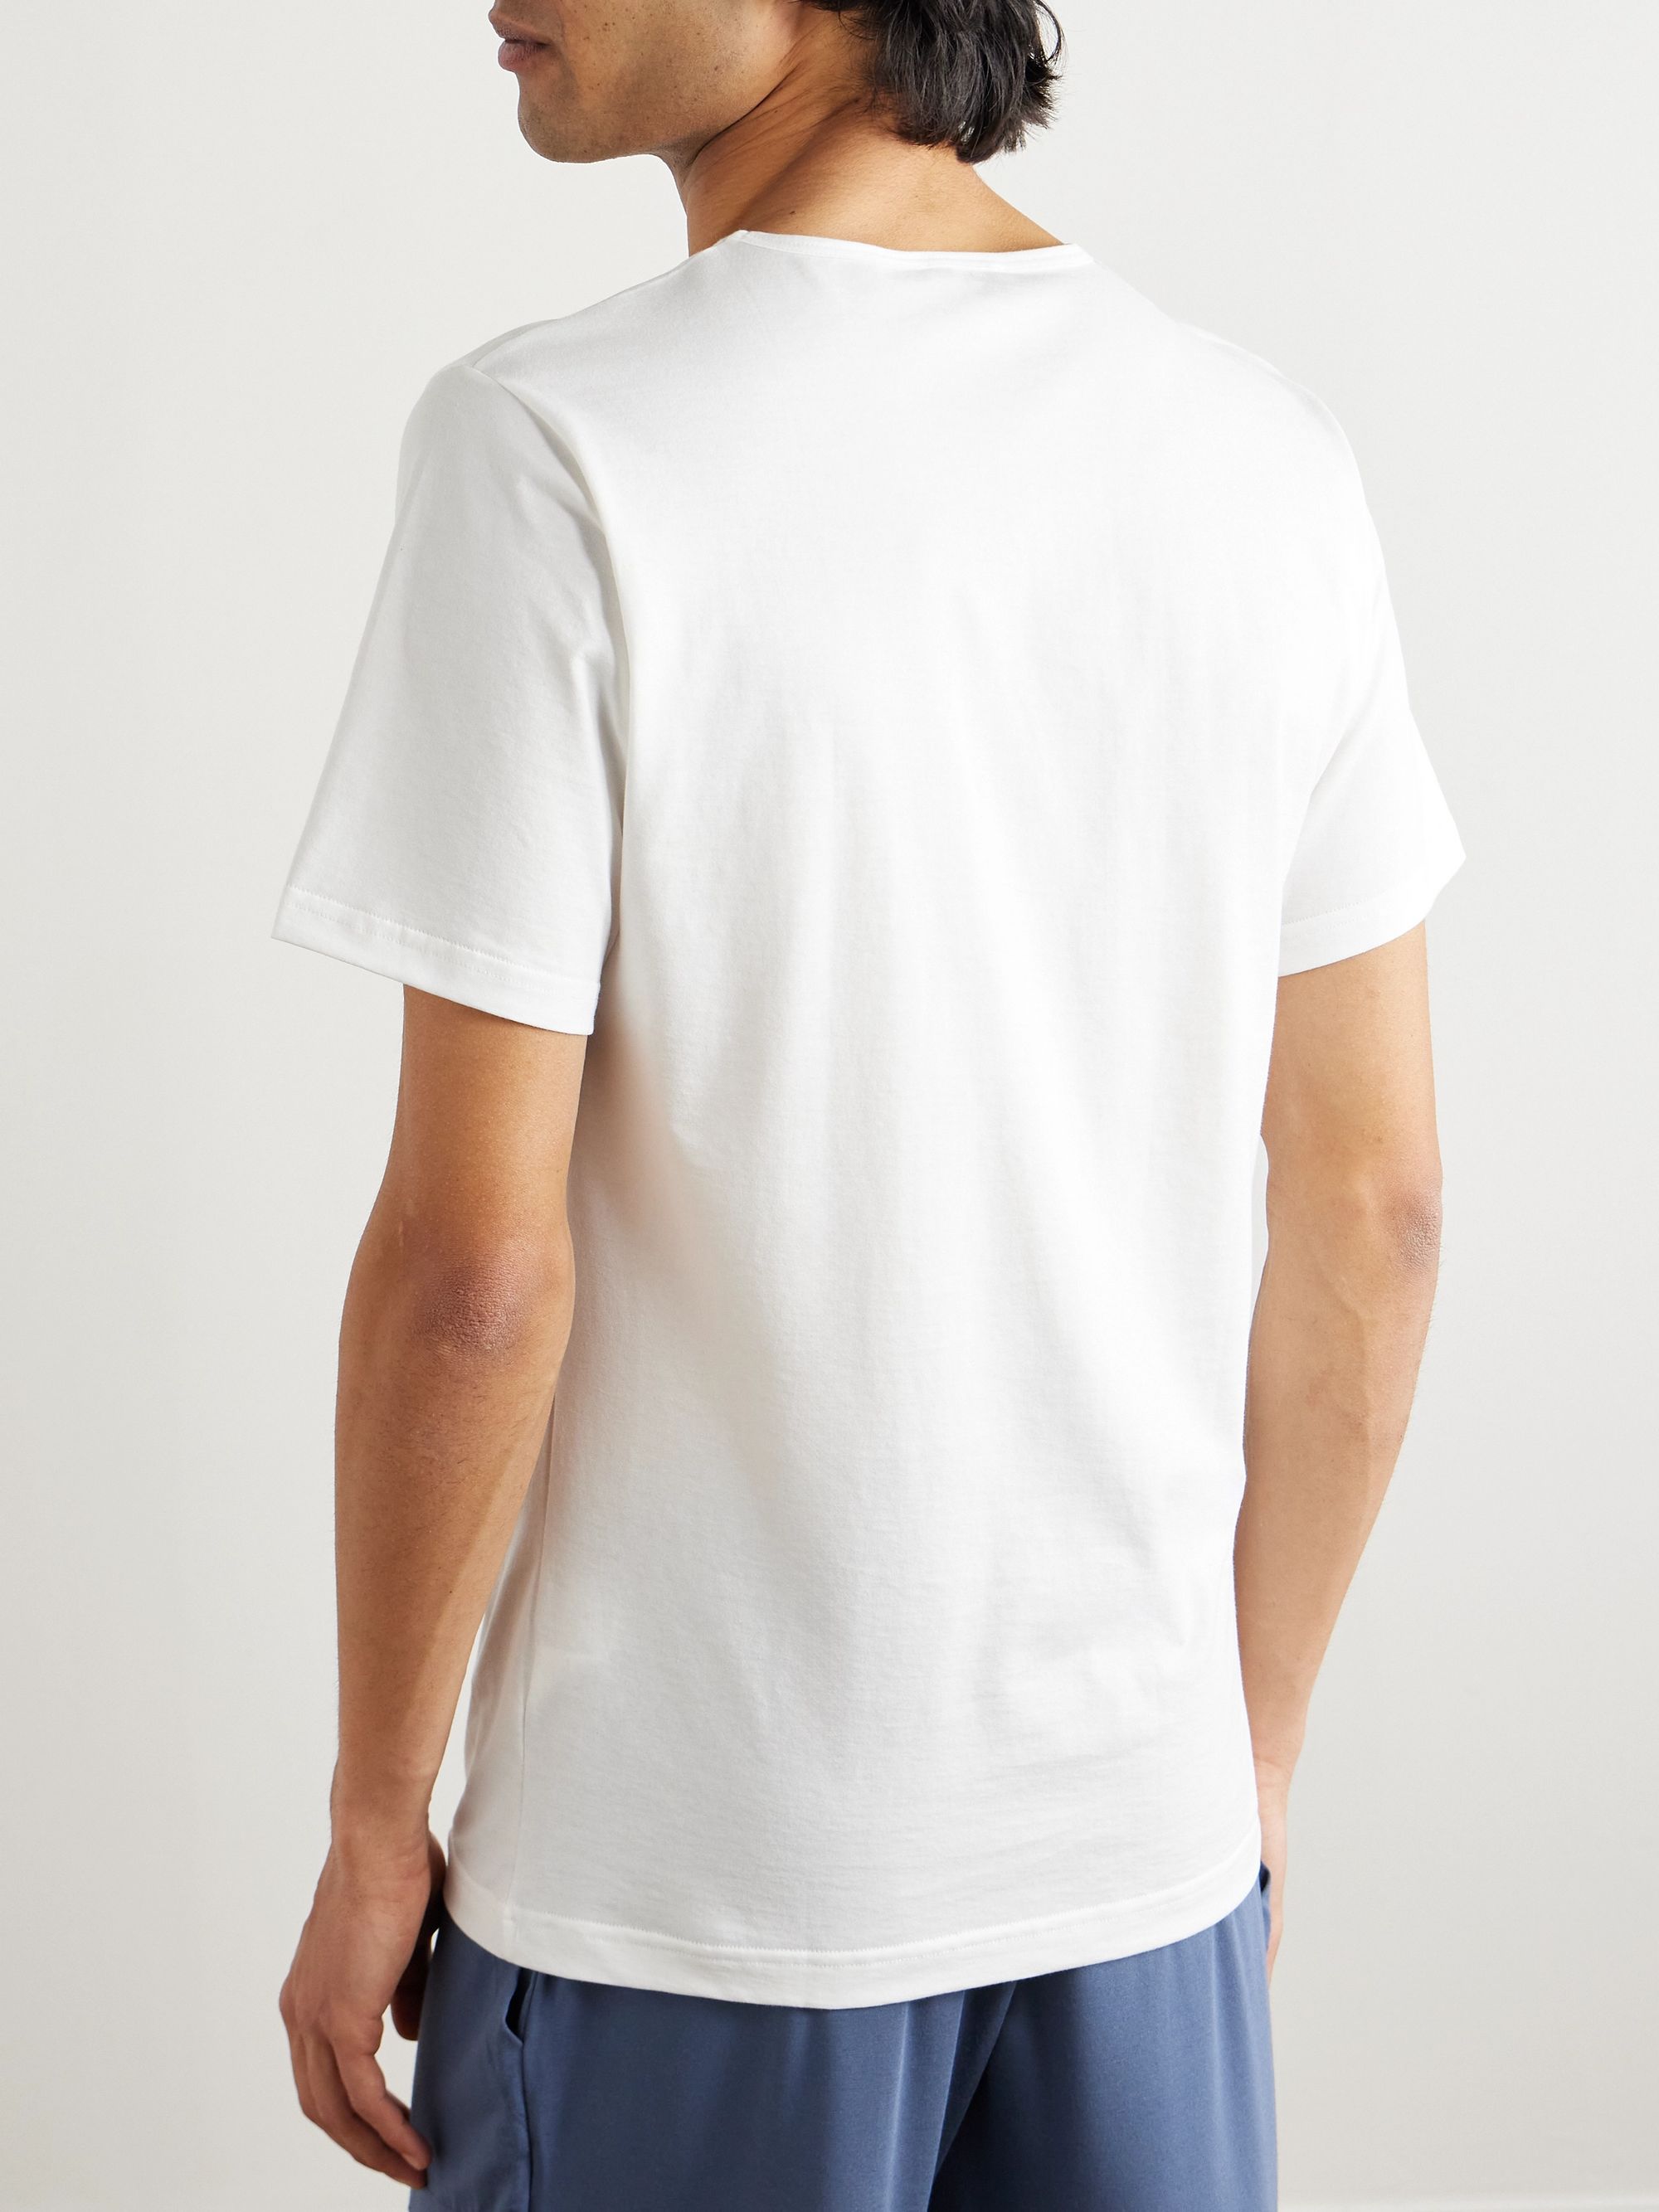 White Superfine Cotton Underwear T-Shirt | SUNSPEL | MR PORTER